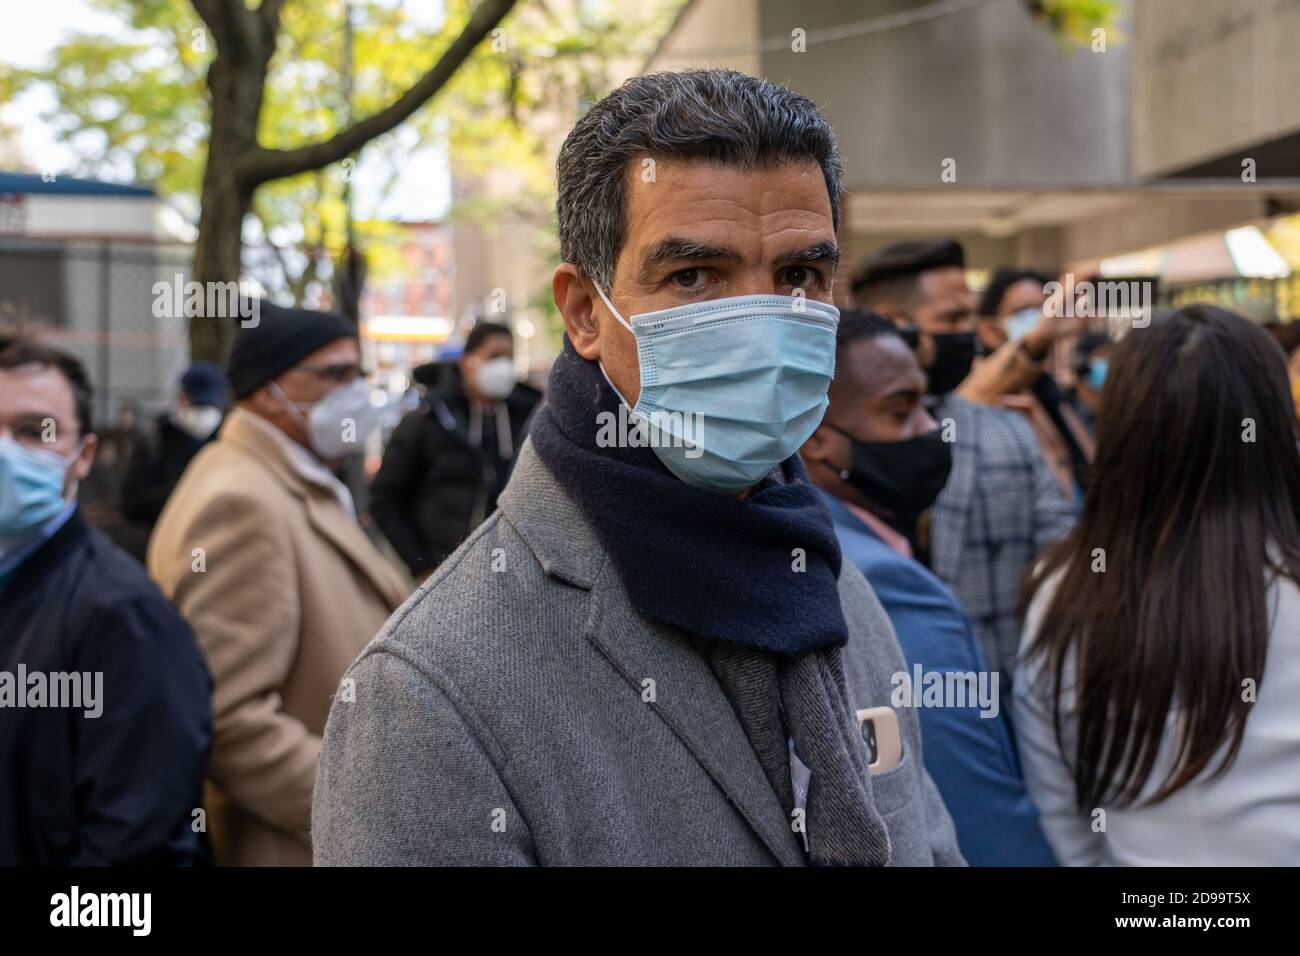 Ydanis Rodriguez, membro del consiglio comunale che indossa una maschera facciale, parla alla stampa all'esterno di un sito di sondaggi a Manhattan durante le elezioni presidenziali degli Stati Uniti del 2020 a New York City. Foto Stock